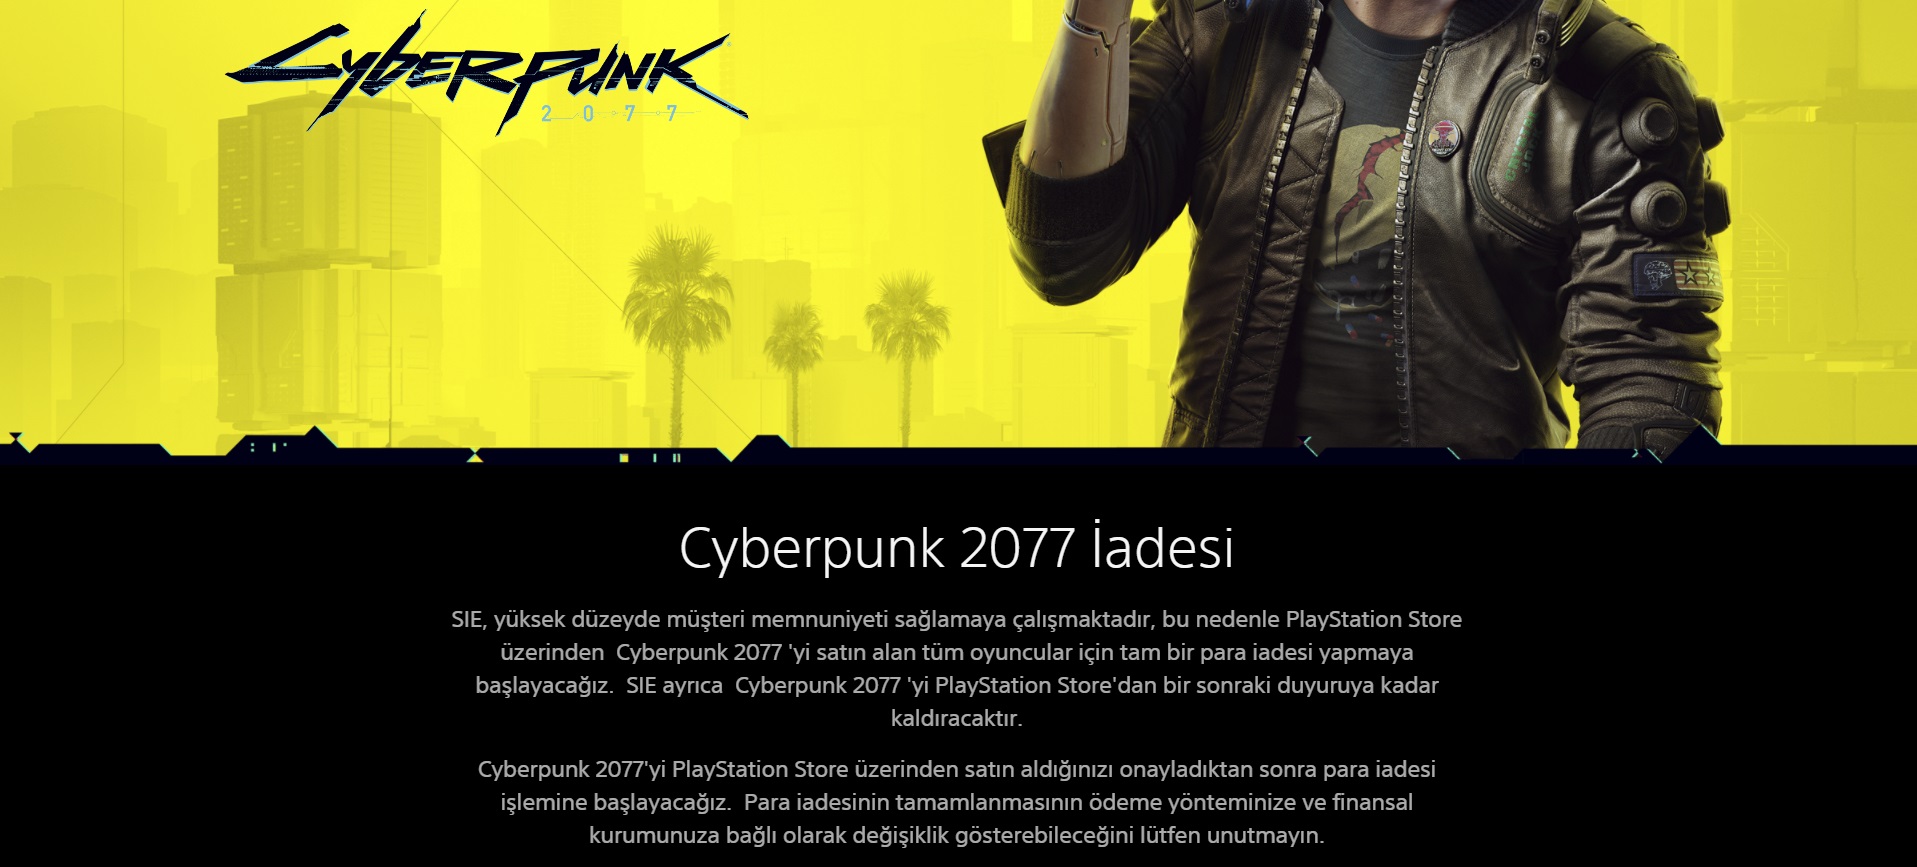 Cyberpunk 2077 para iadesi nasıl alınır?